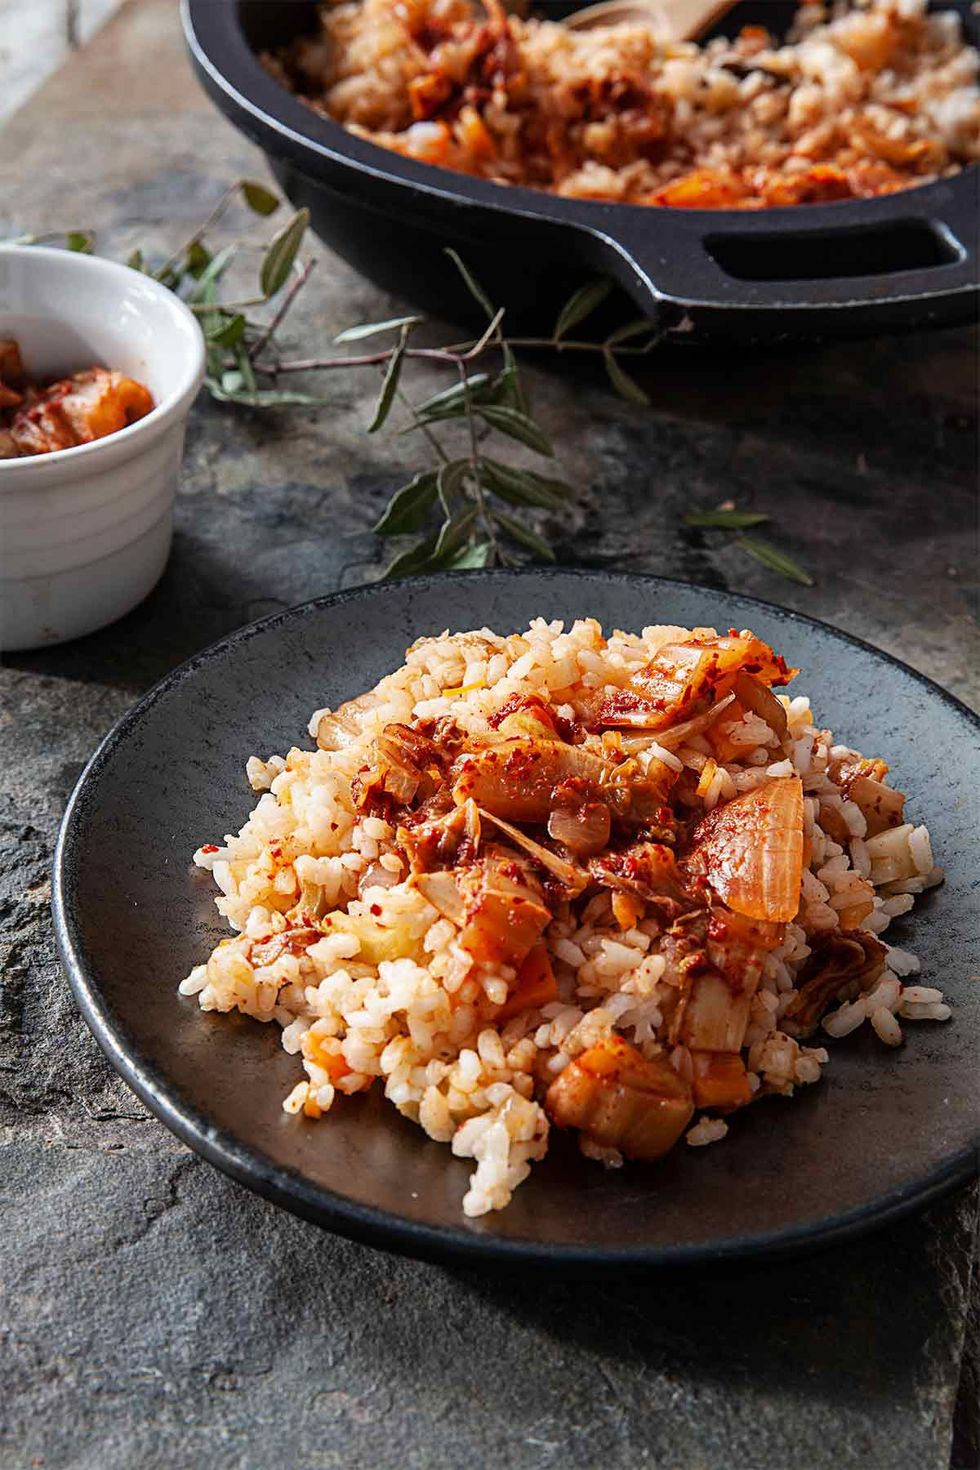 Recetas con arroz integral muy sabrosas